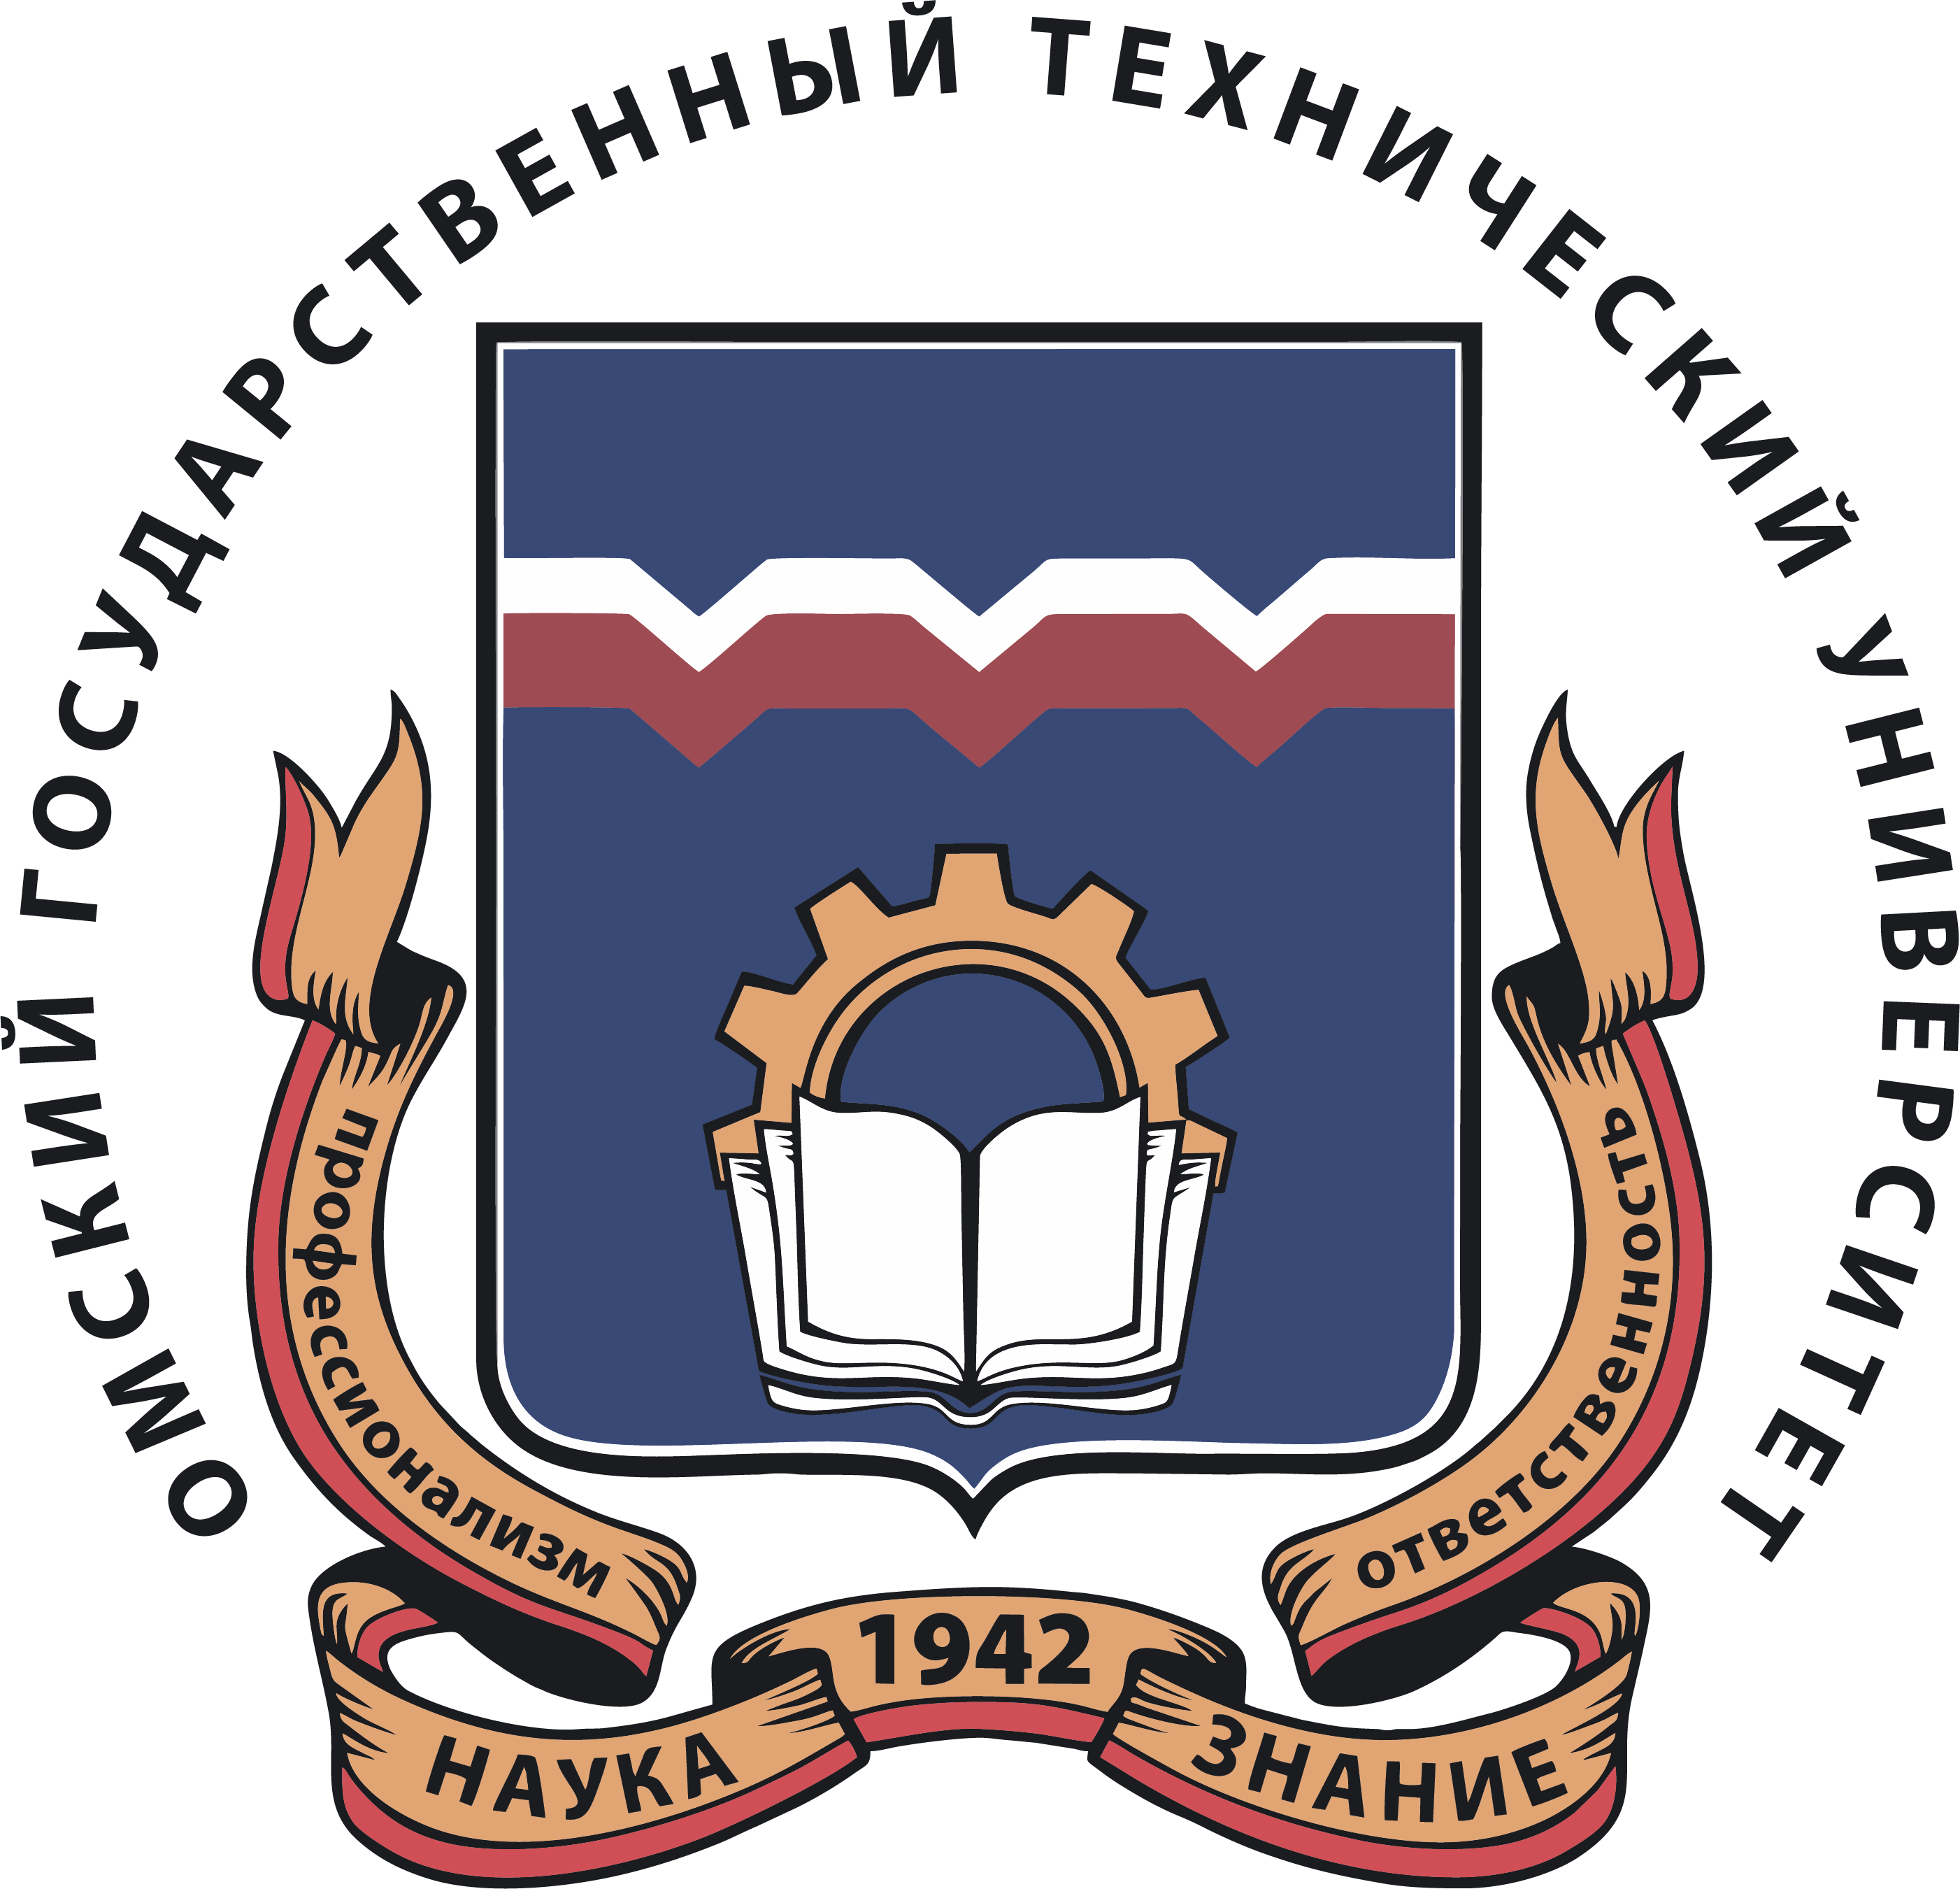 Омский государственный технический университет